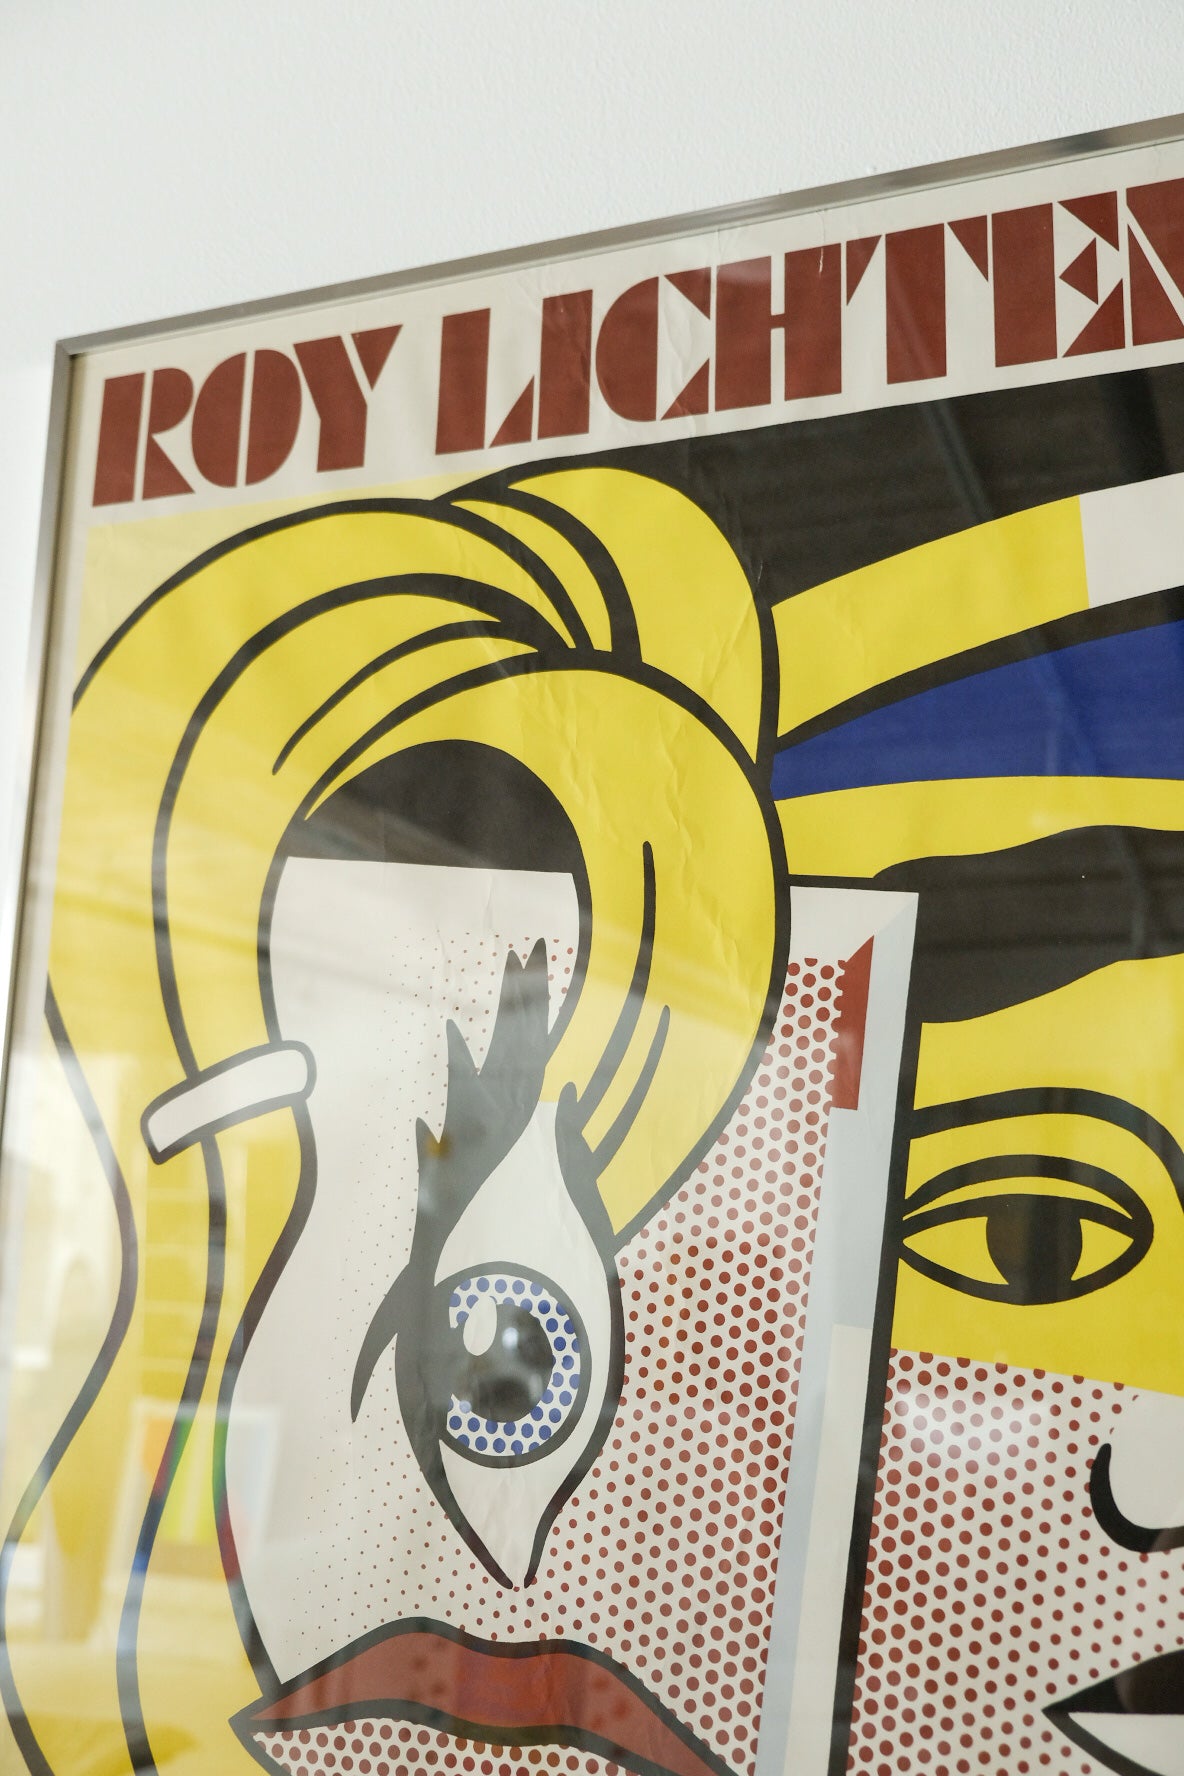 Lichtenstein Exhibition Frame Print - Leo Castelli Gallery 1979